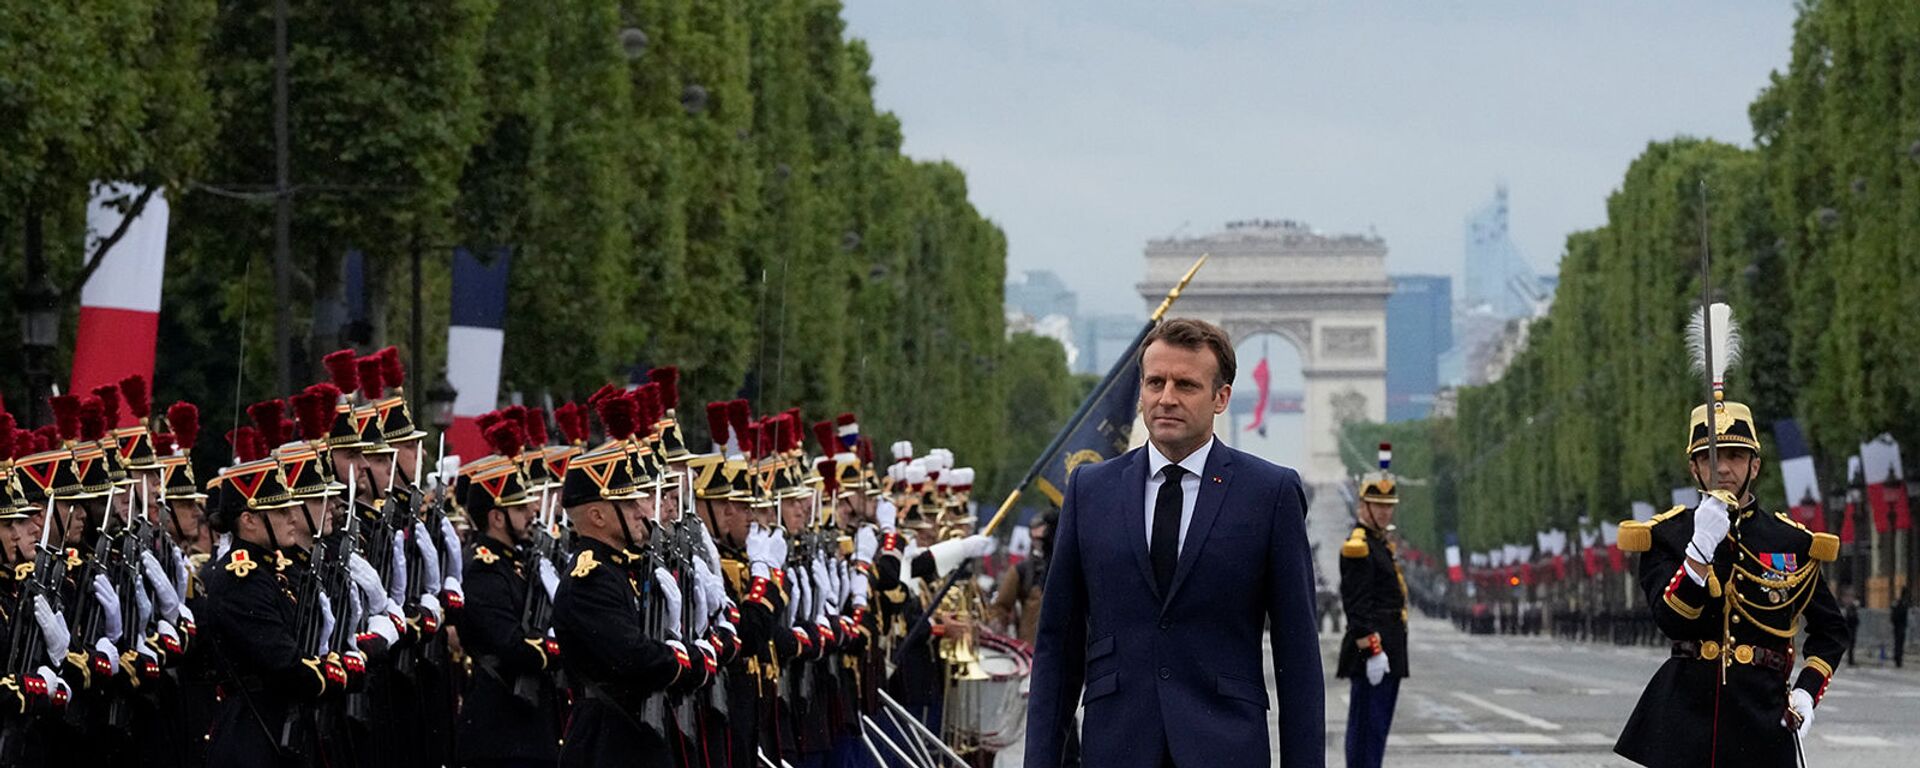 Президент Франции Эммануэль Макрон во время парада в честь Дня взятия Бастилии на Елисейских полях (14 июля 2021). Париж - Sputnik Արմենիա, 1920, 06.10.2021